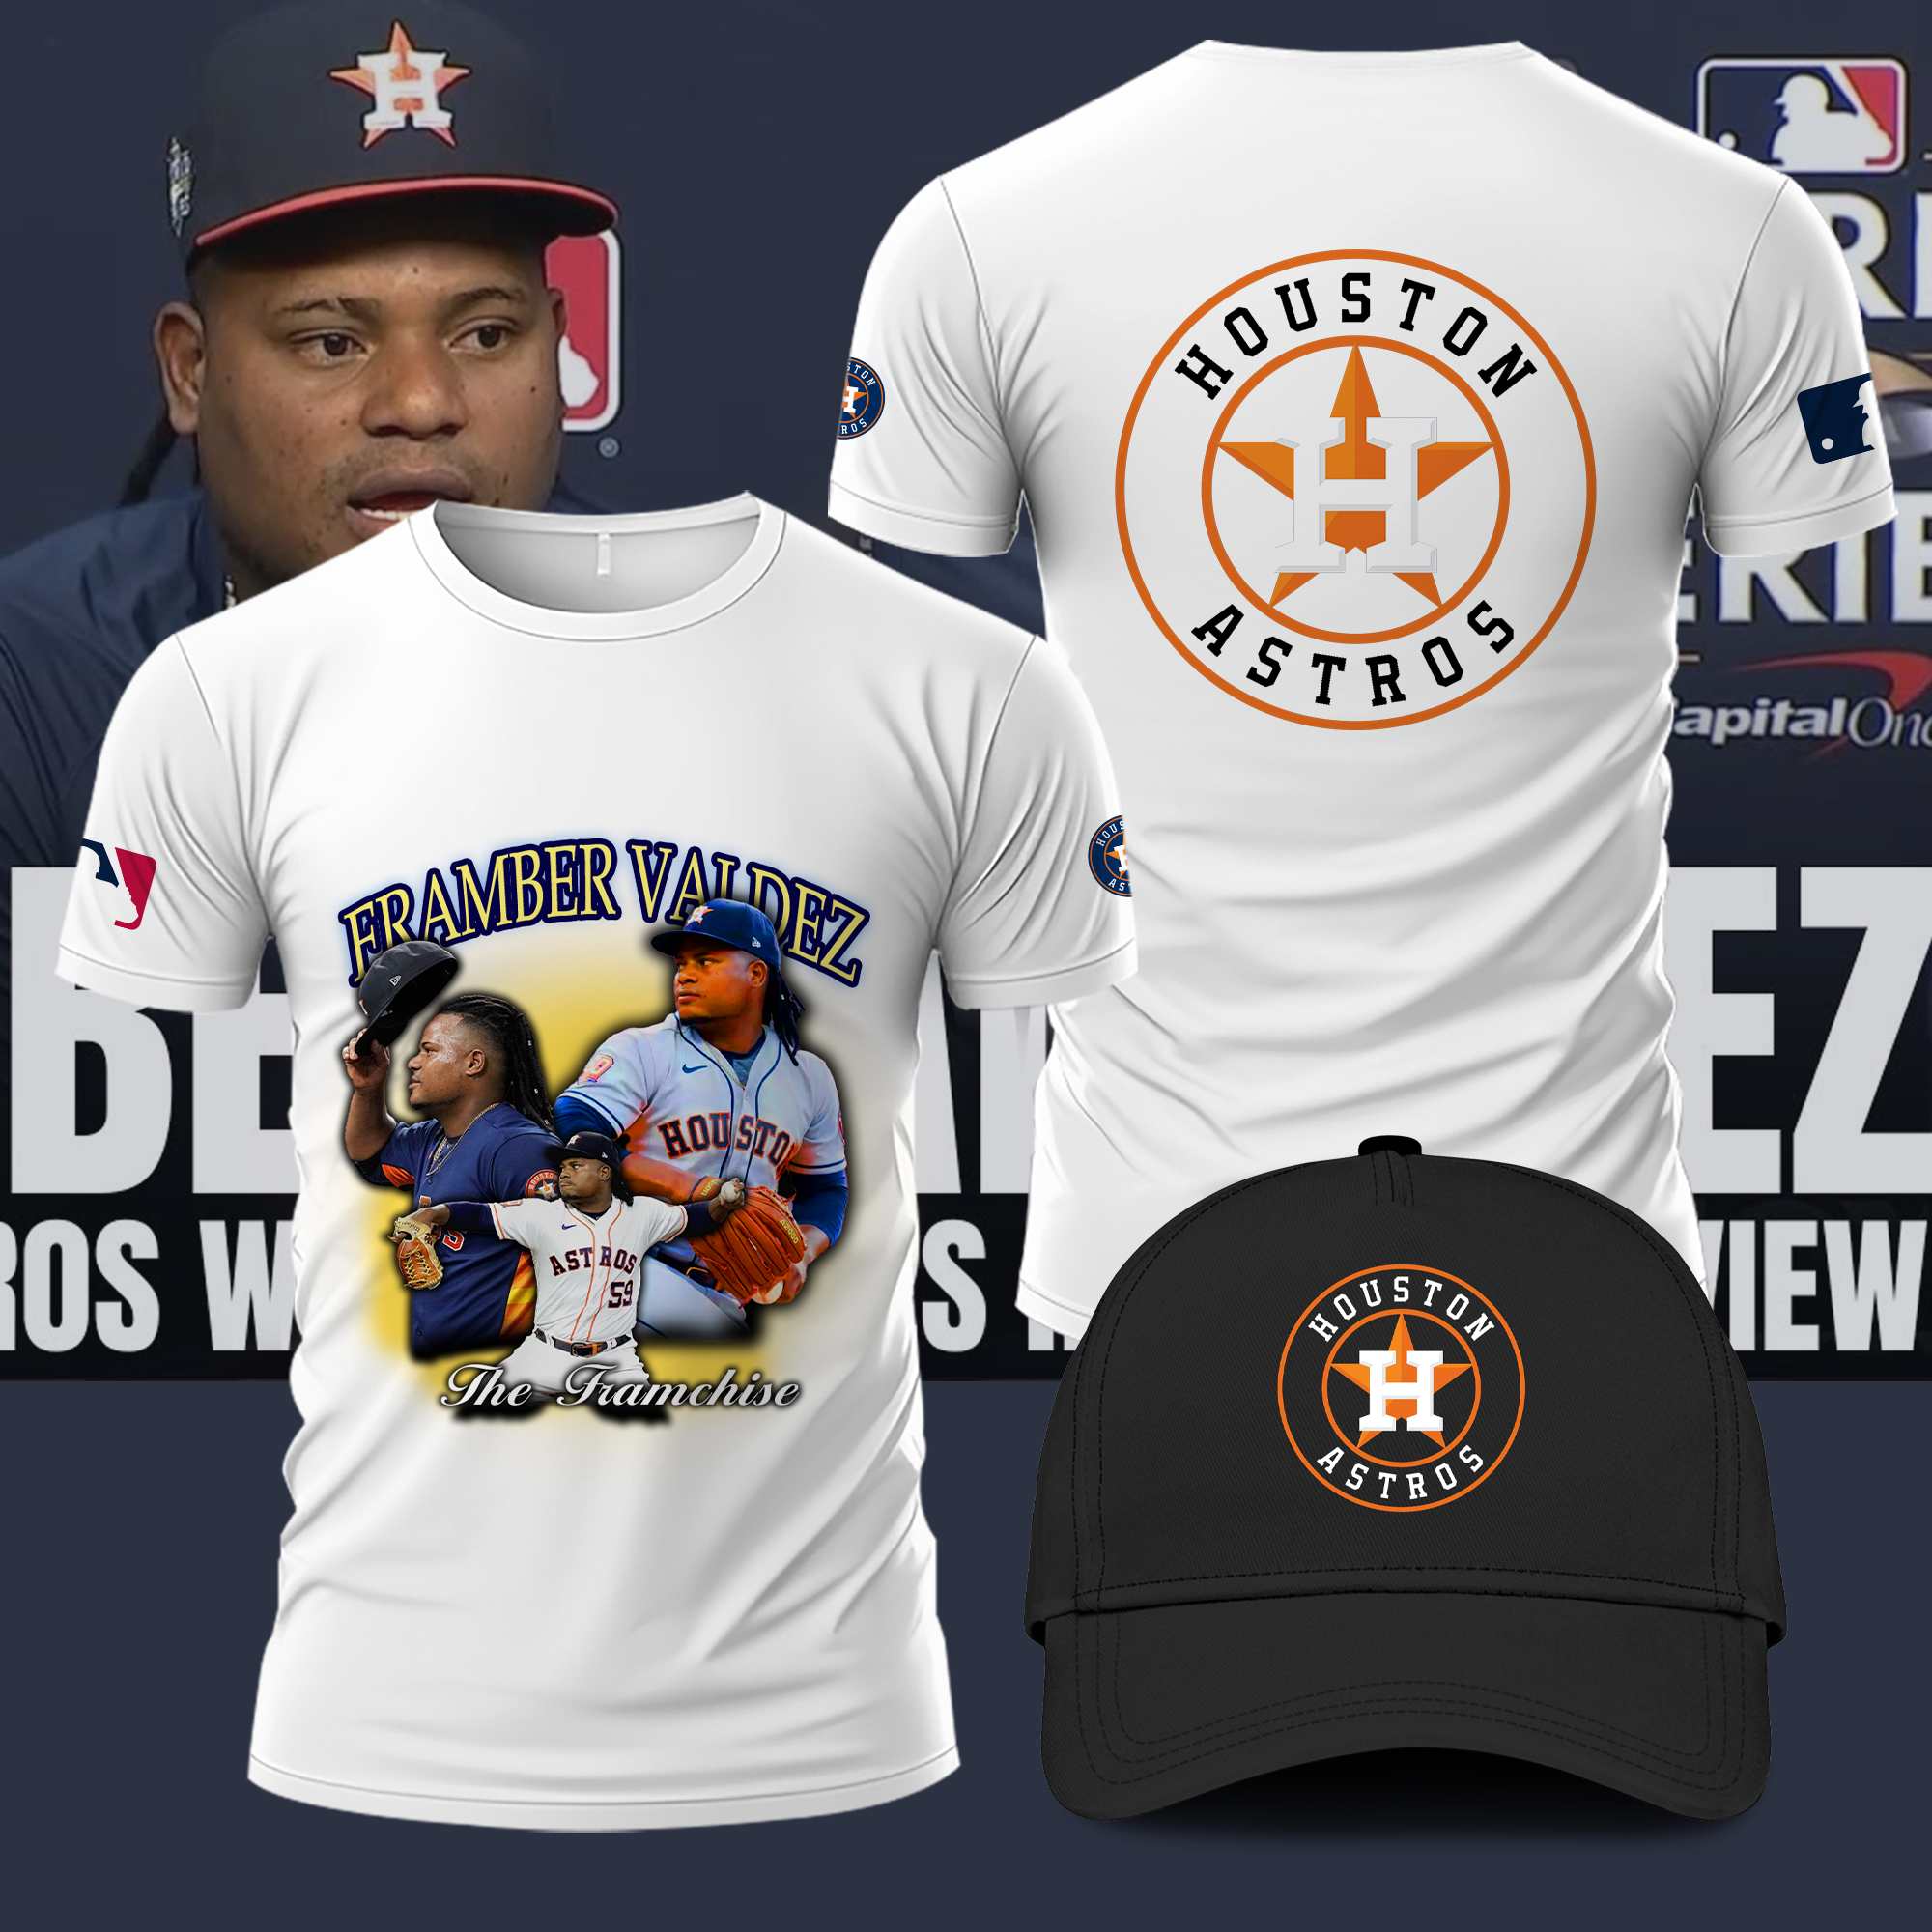 Where can I buy that Framber Valdez Quality Start Tour 2022 t-shirt? :  r/Astros